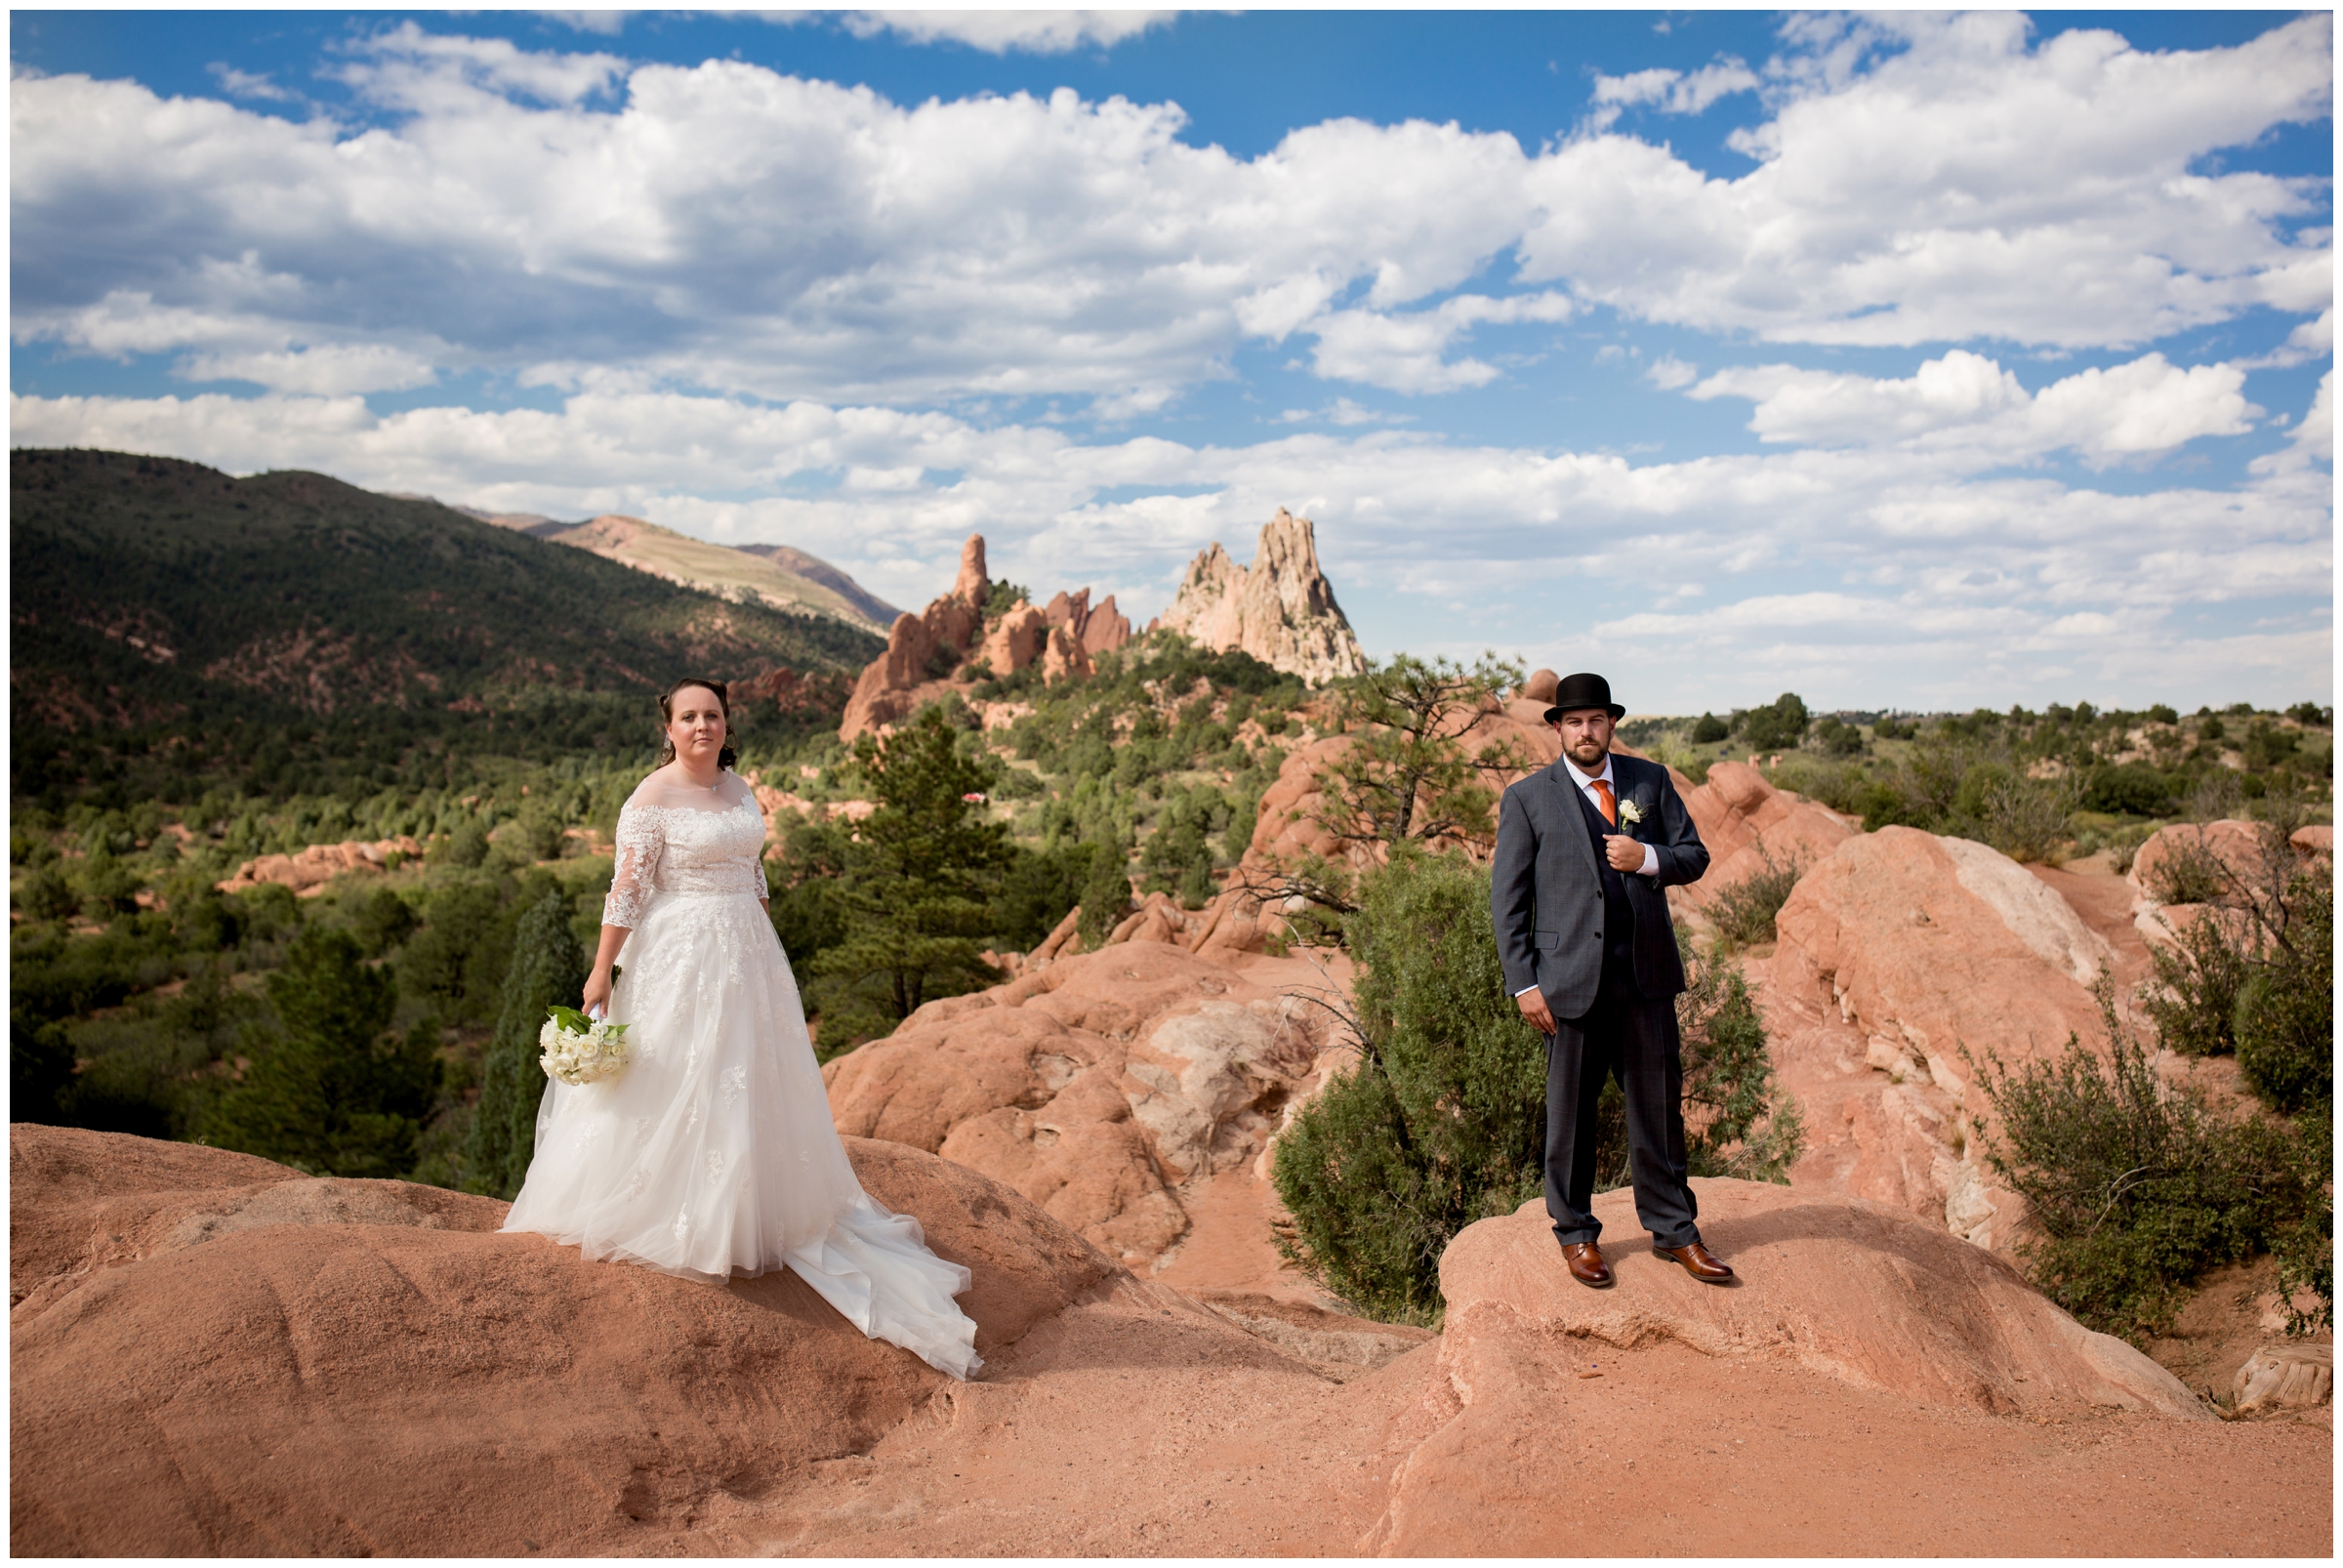 Colorado Springs summer wedding photography inspiration 